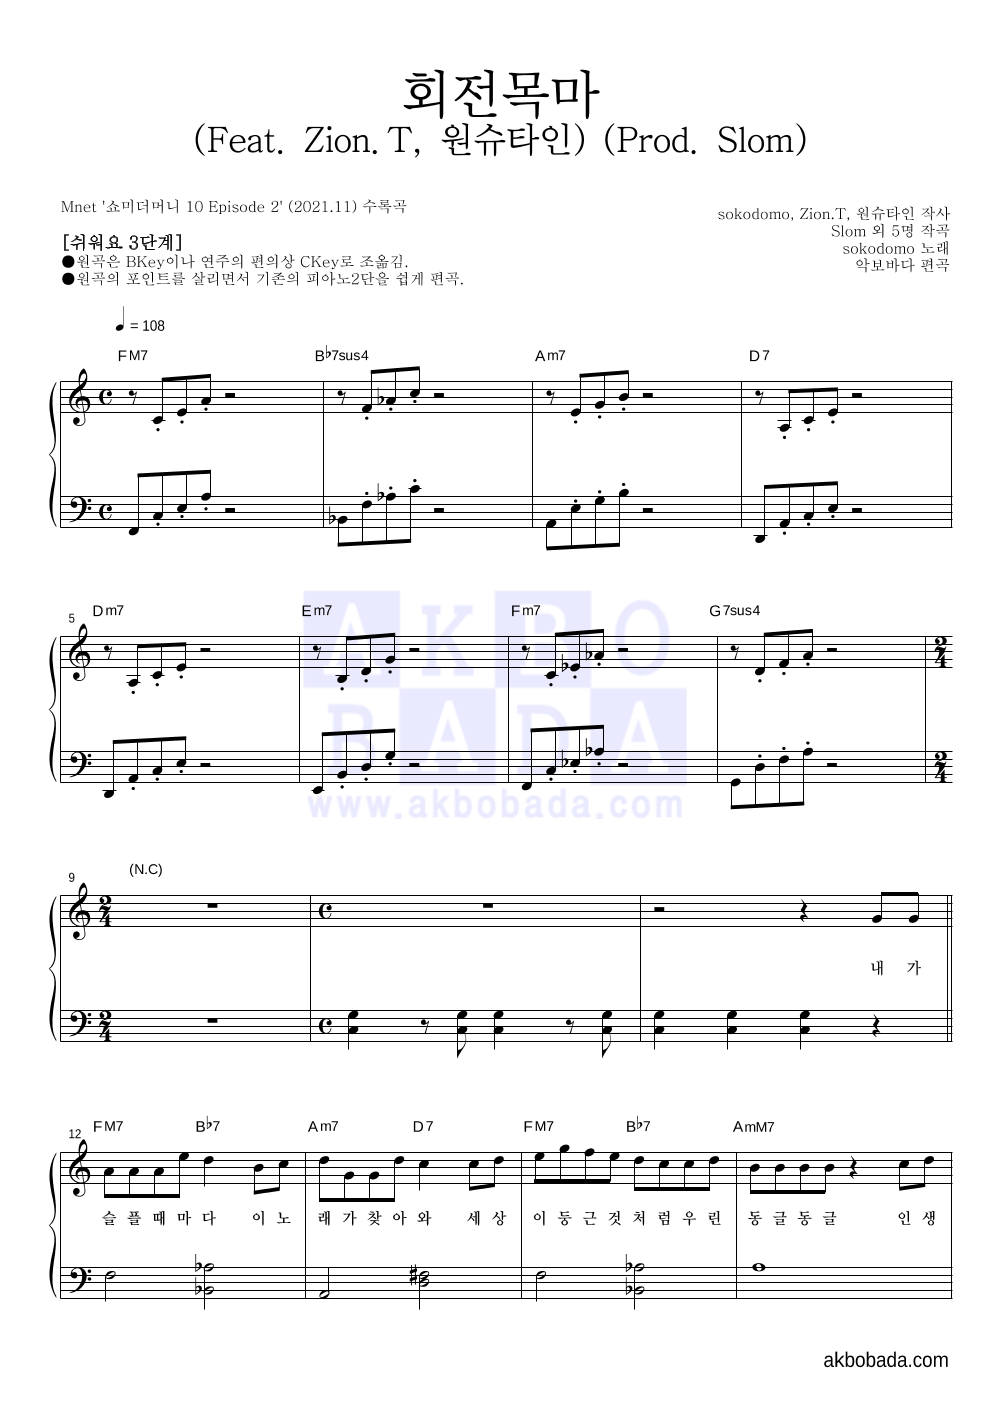 sokodomo - 회전목마 (Feat. Zion.T, 원슈타인) (Prod. Slom) 피아노2단-쉬워요 악보 